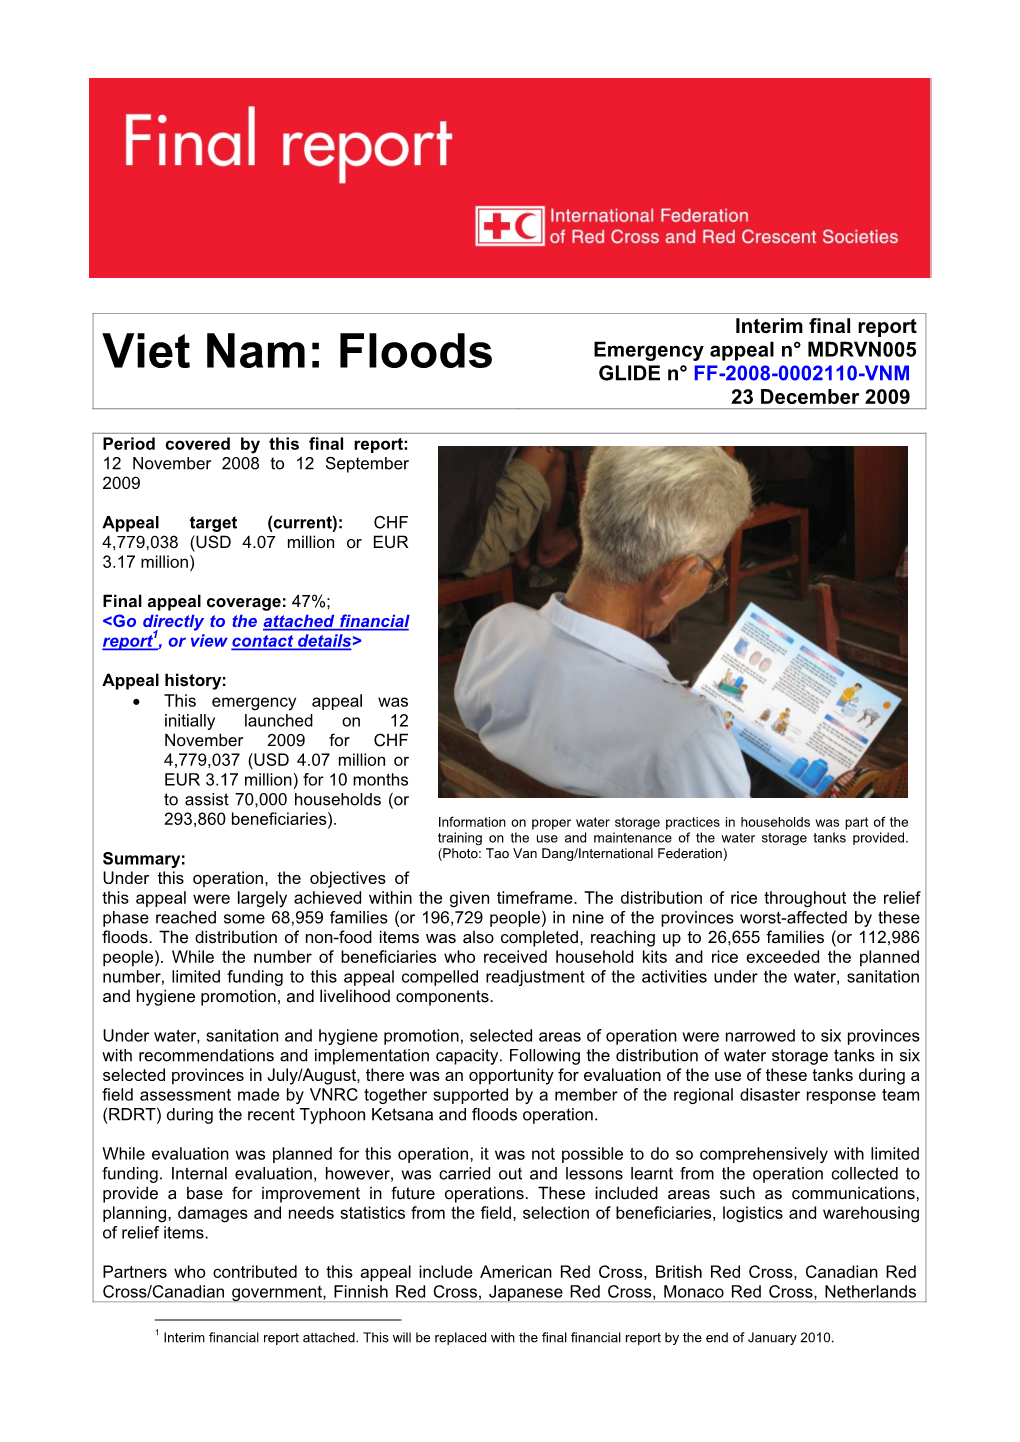 Viet Nam: Floods GLIDE N° FF-2008-0002110-VNM 23 December 2009